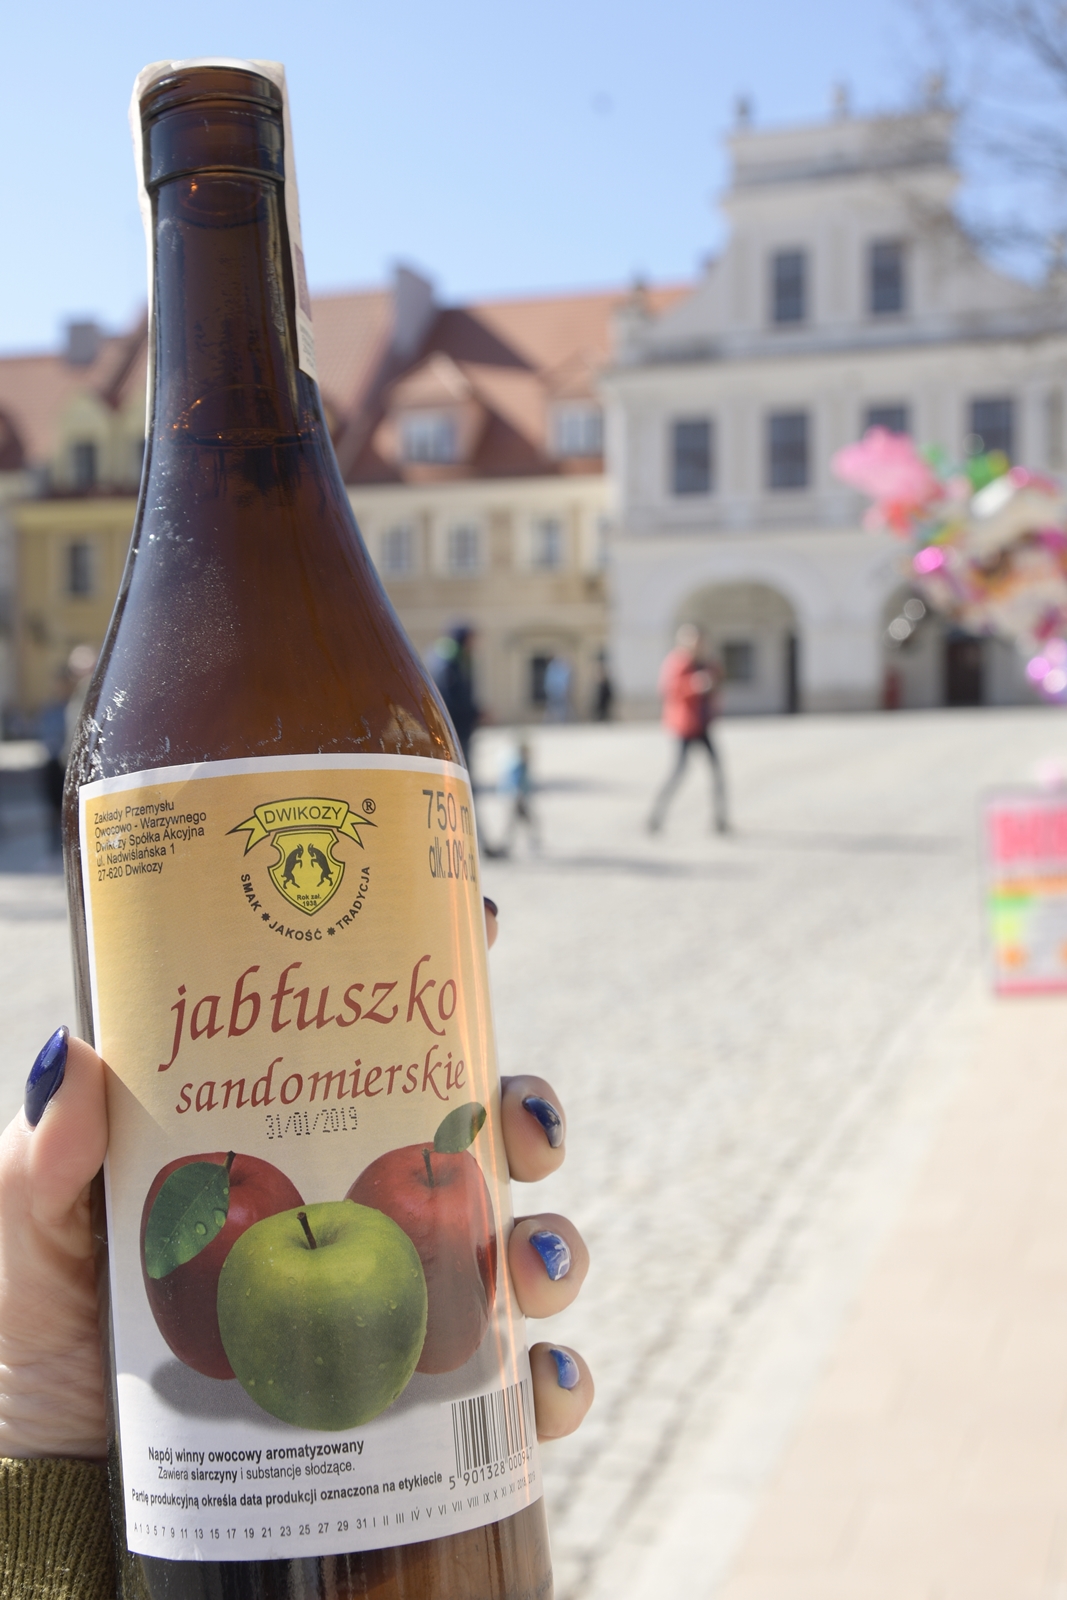 Jabłuszko sandomierskie to tani alkohol ze Świętokrzyskiego. Tzw. "wino marki wino".